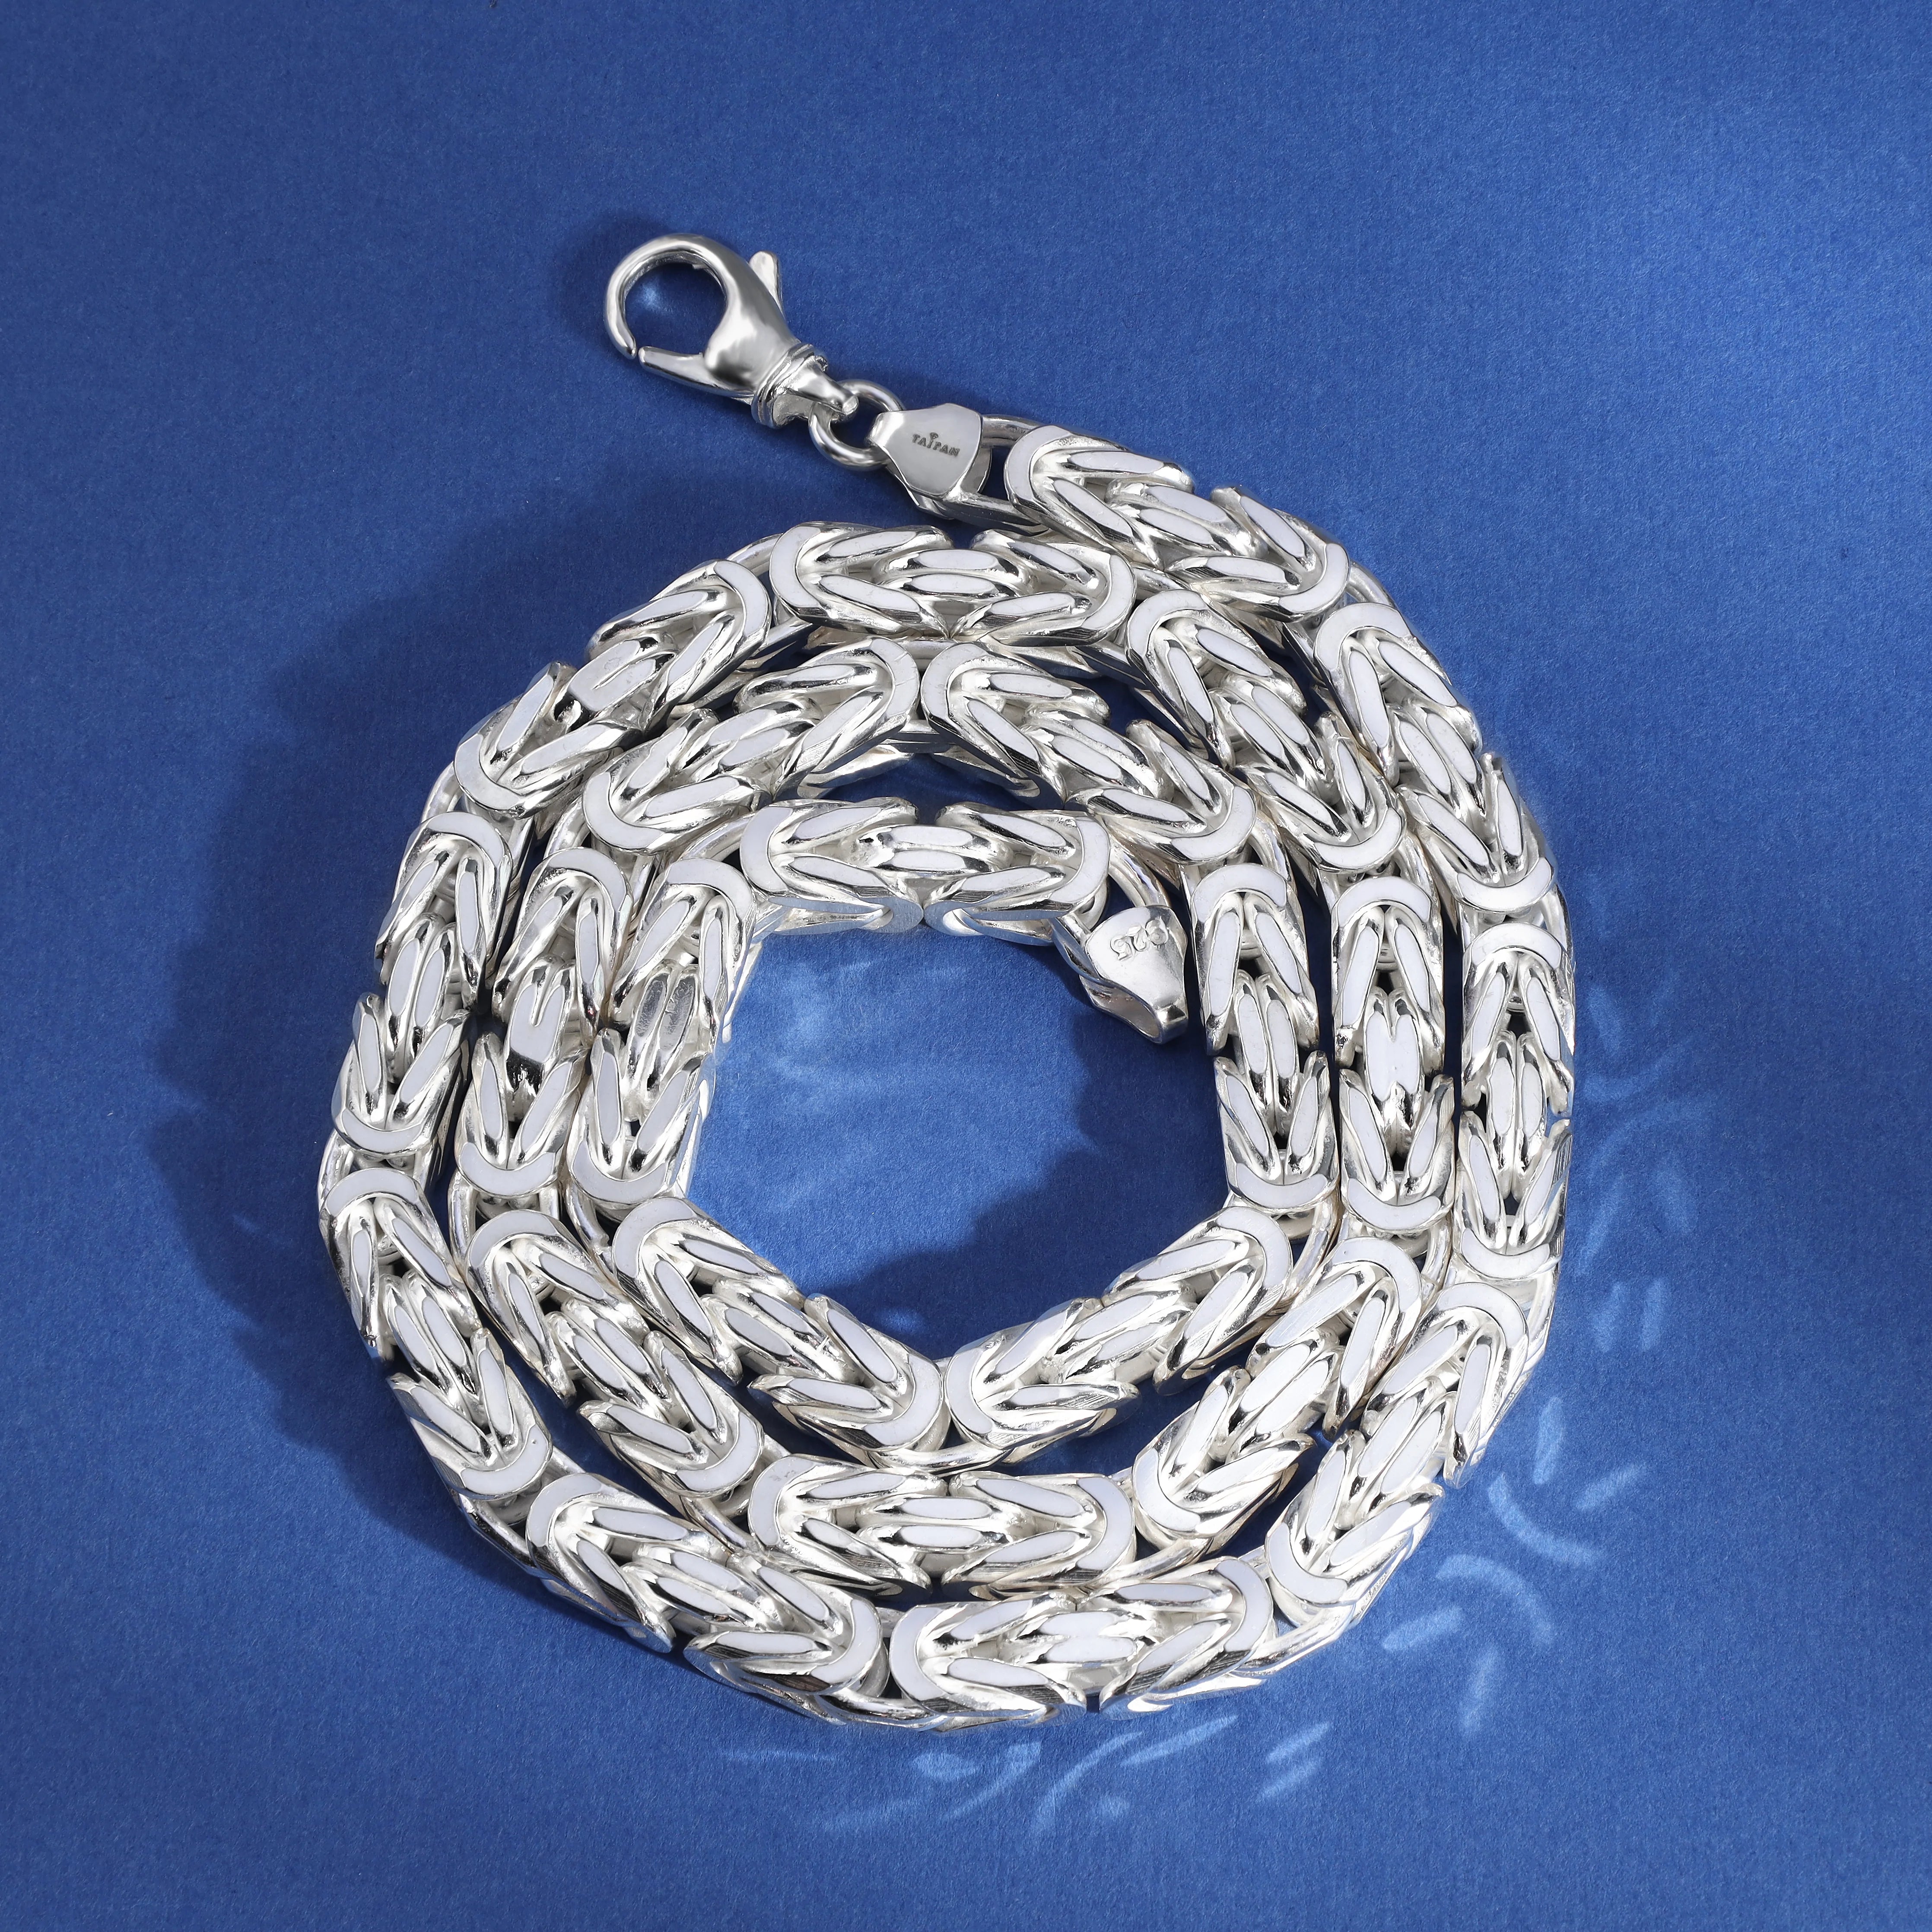 Königskette vierkant 7mm breit 80cm lang 925 Sterling Silber (K973) - Taipan Schmuck